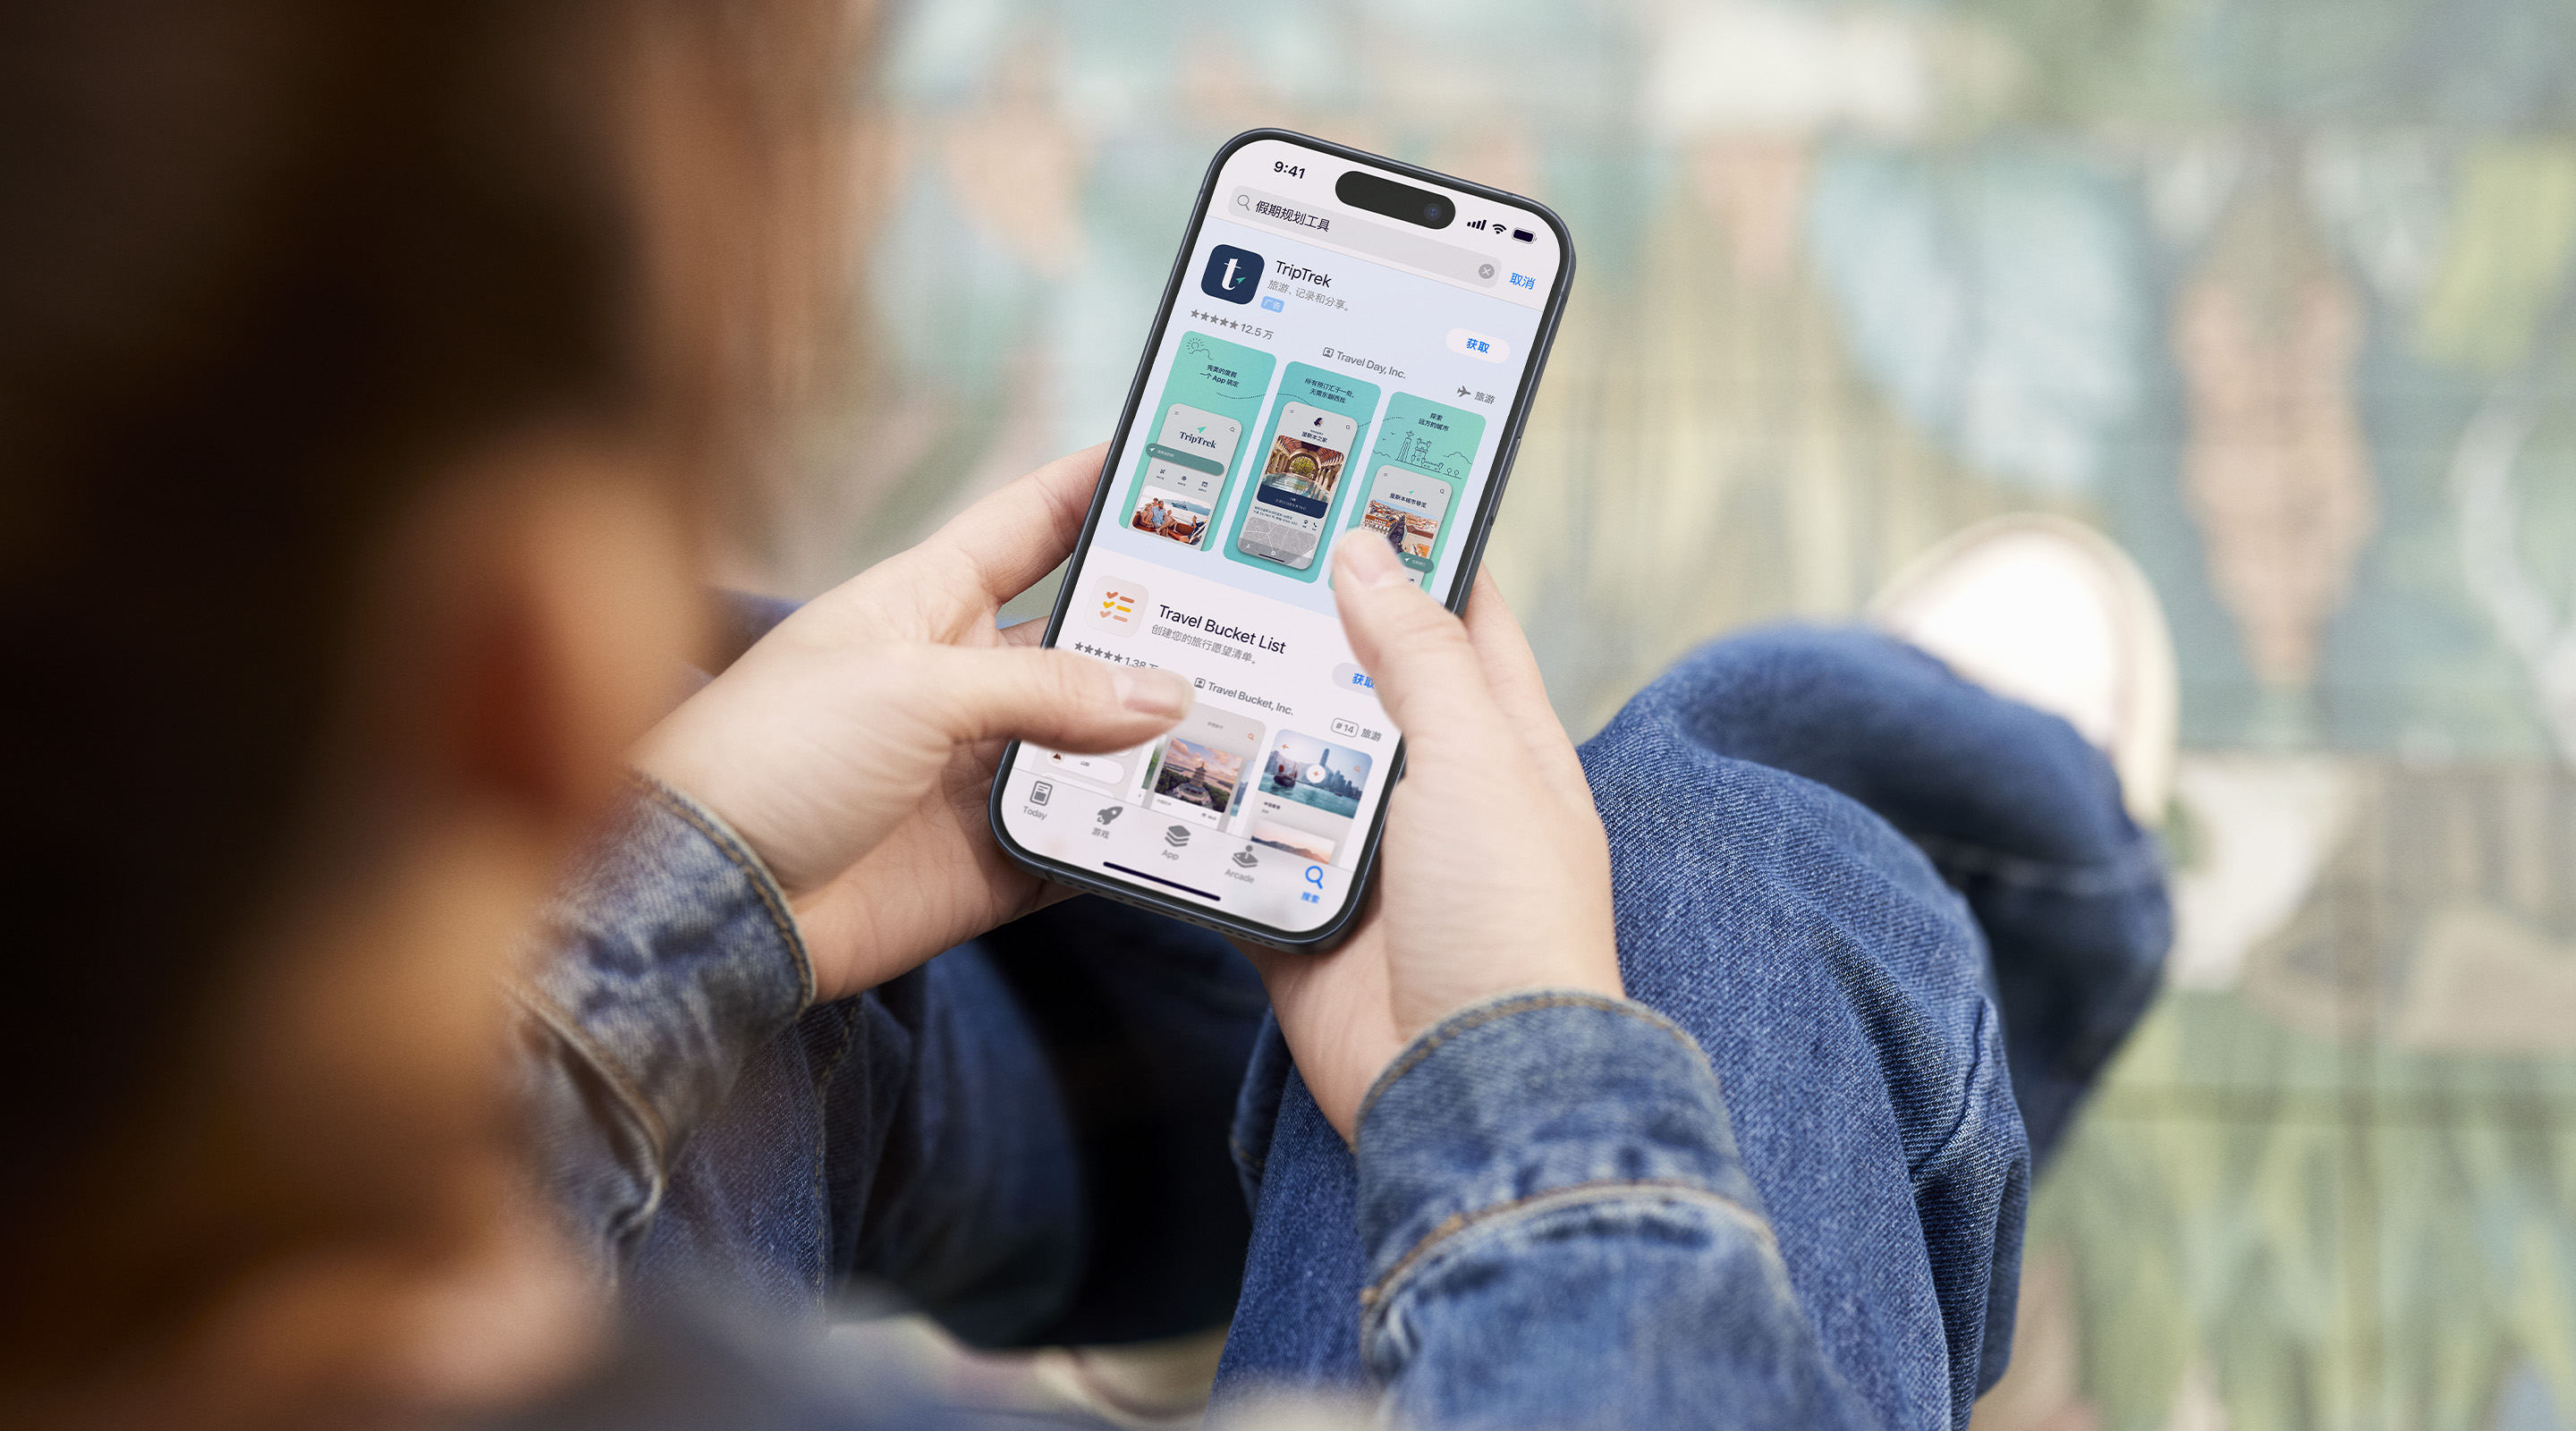 双手拿着 iPhone。已打开的 App Store 展示了示例 app“TripTrek”的搜索结果广告，搜索框中输入了“假期规划工具”一词。